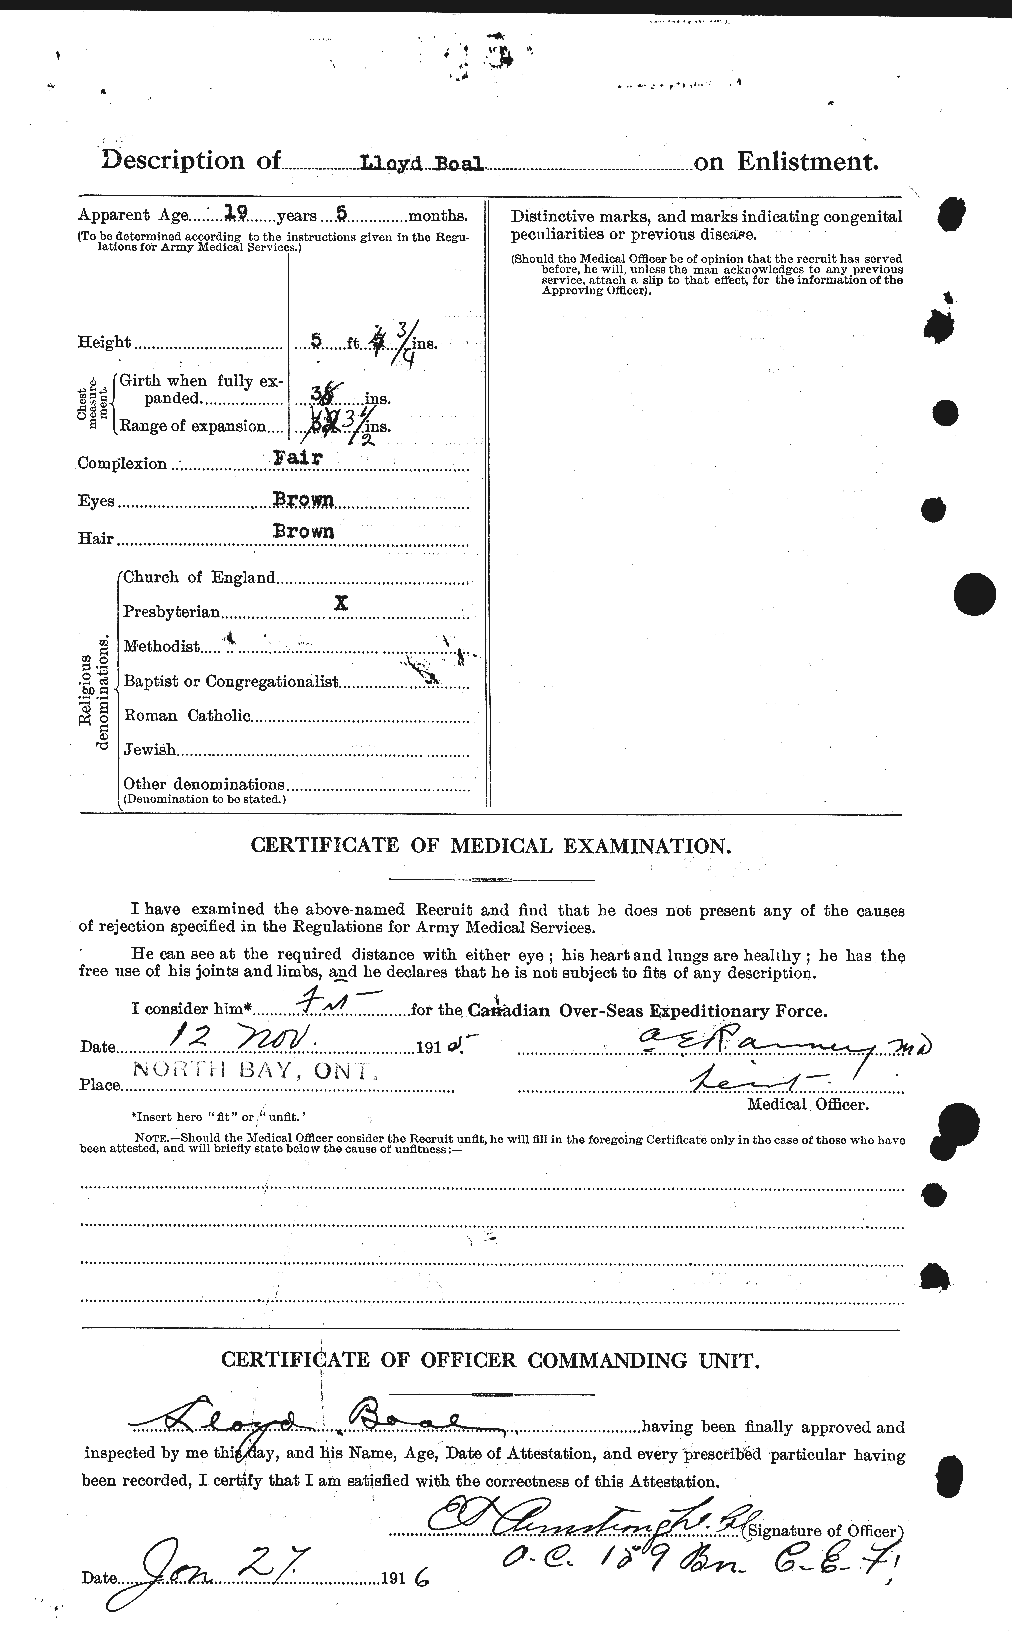 Dossiers du Personnel de la Première Guerre mondiale - CEC 247303b